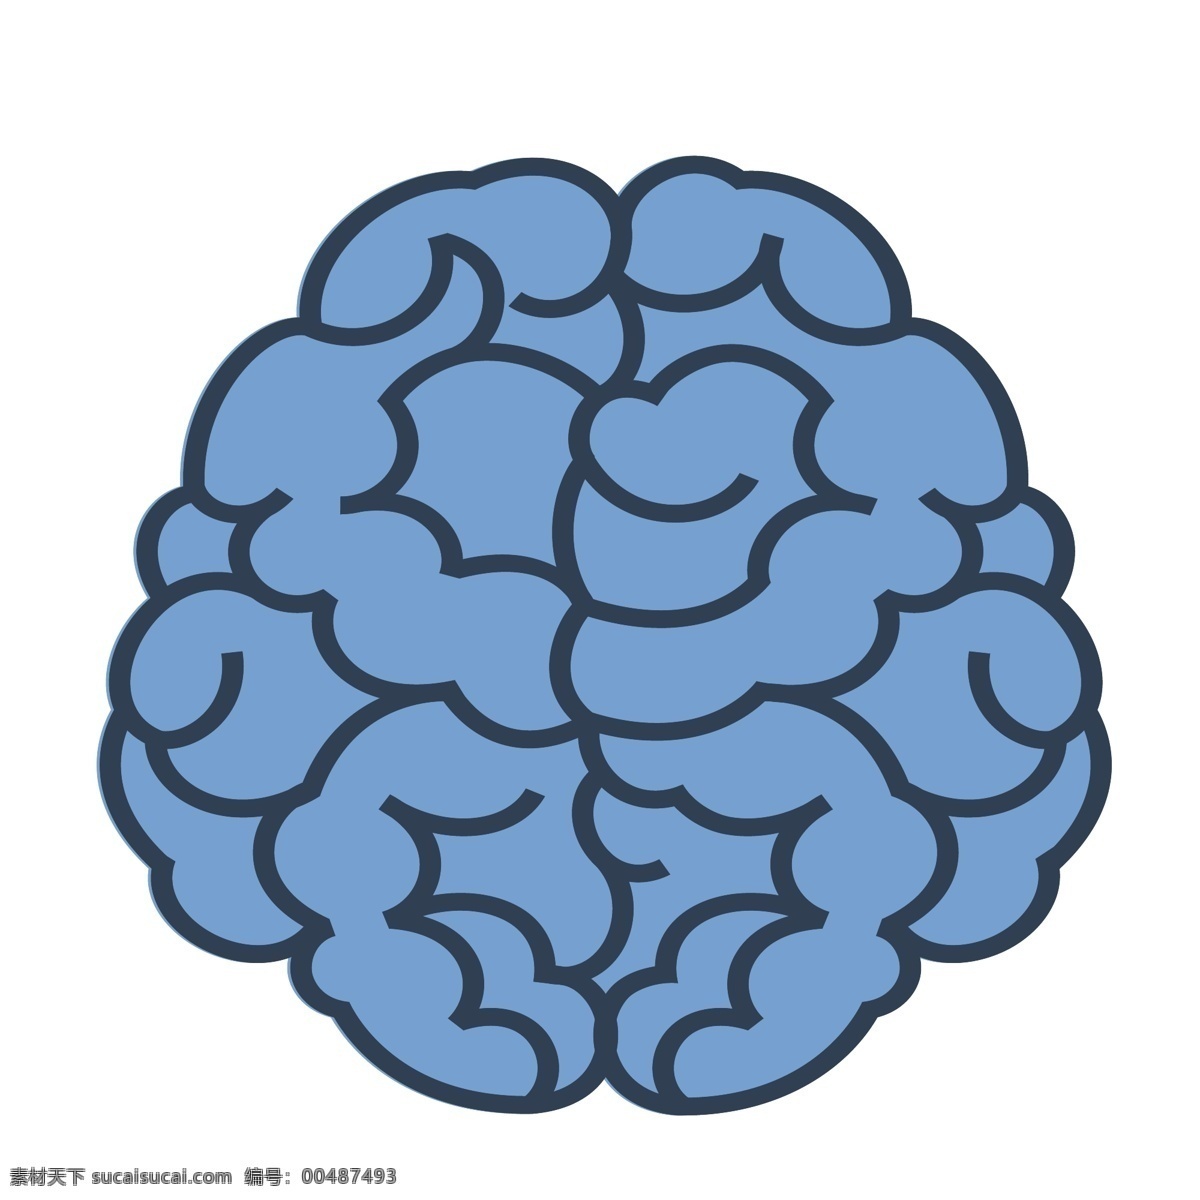 蓝色 线条 大脑 插画 卡通 彩色 小清新 创意 矢量 商务 科技 办公 元素 现代 简约 装饰 图案